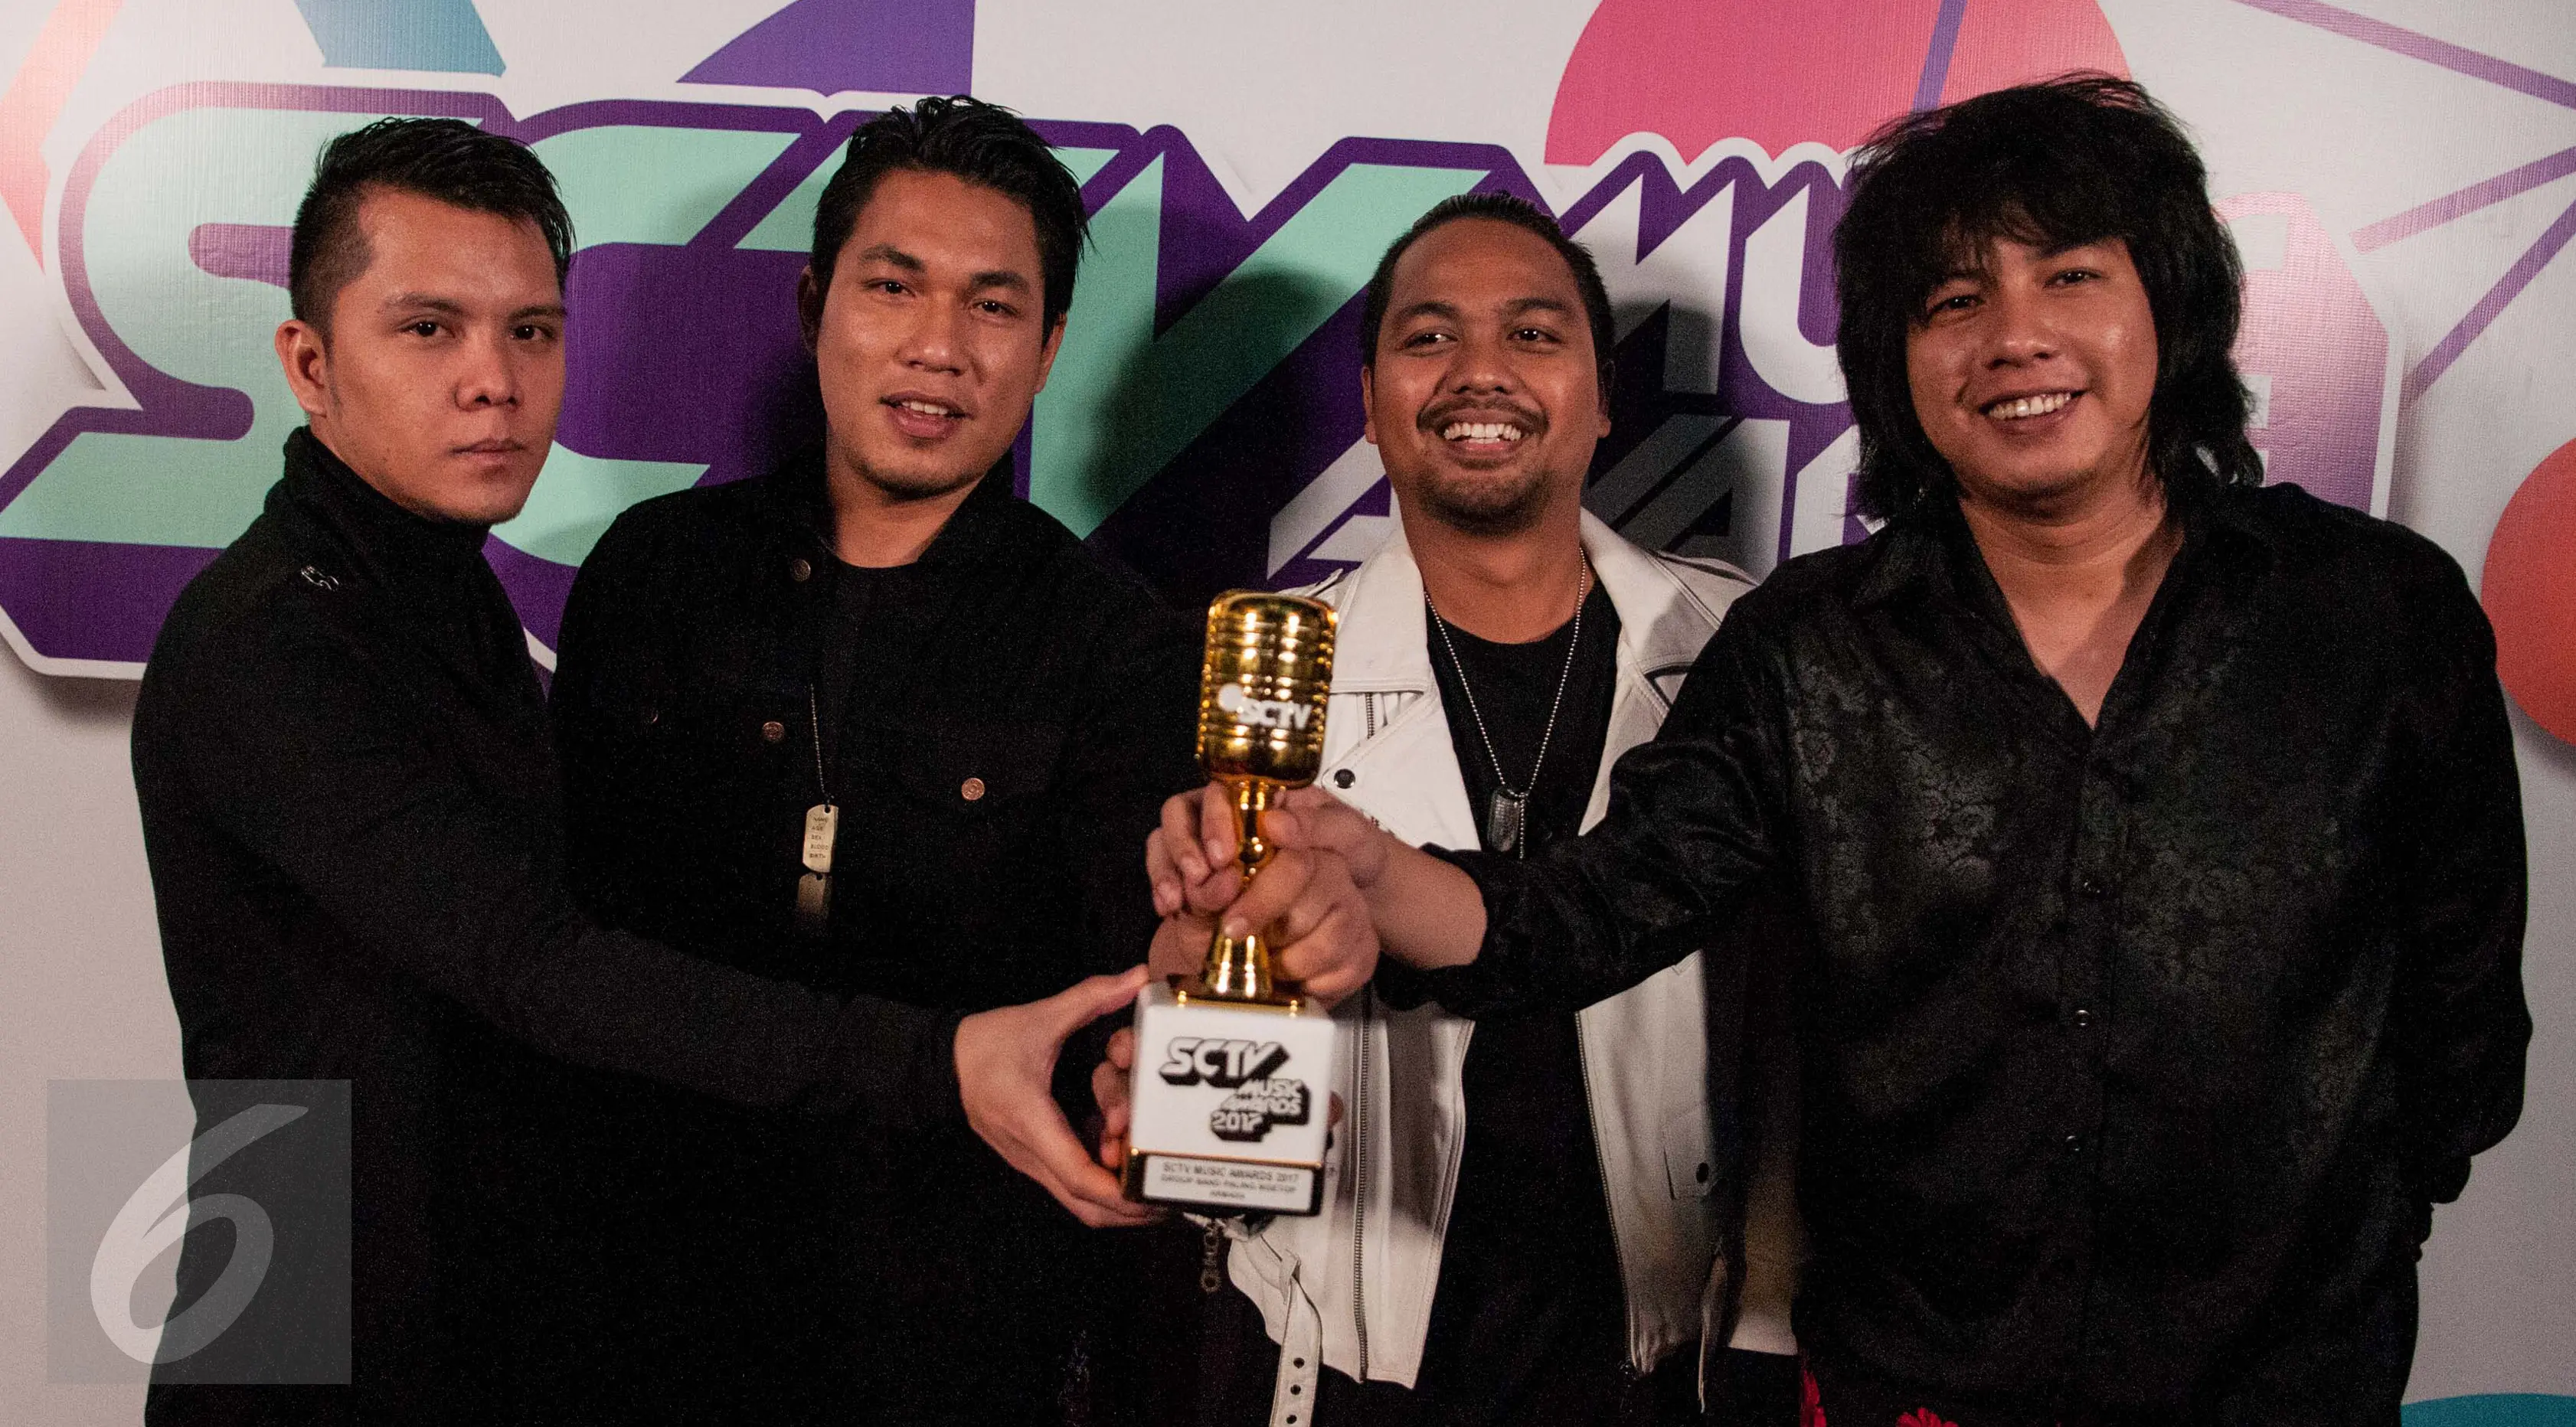 Band Armada meraih penghargaan dari ajang SCTV Music Awards 2017 di Studio 6 Emtek City, Jakarta Barat, Selasa (16/5) malam. Armada menerima penghargaan untuk kategori Grup Band Paling Ngetop 2017. (Liputan6.com/Gempur M Surya)